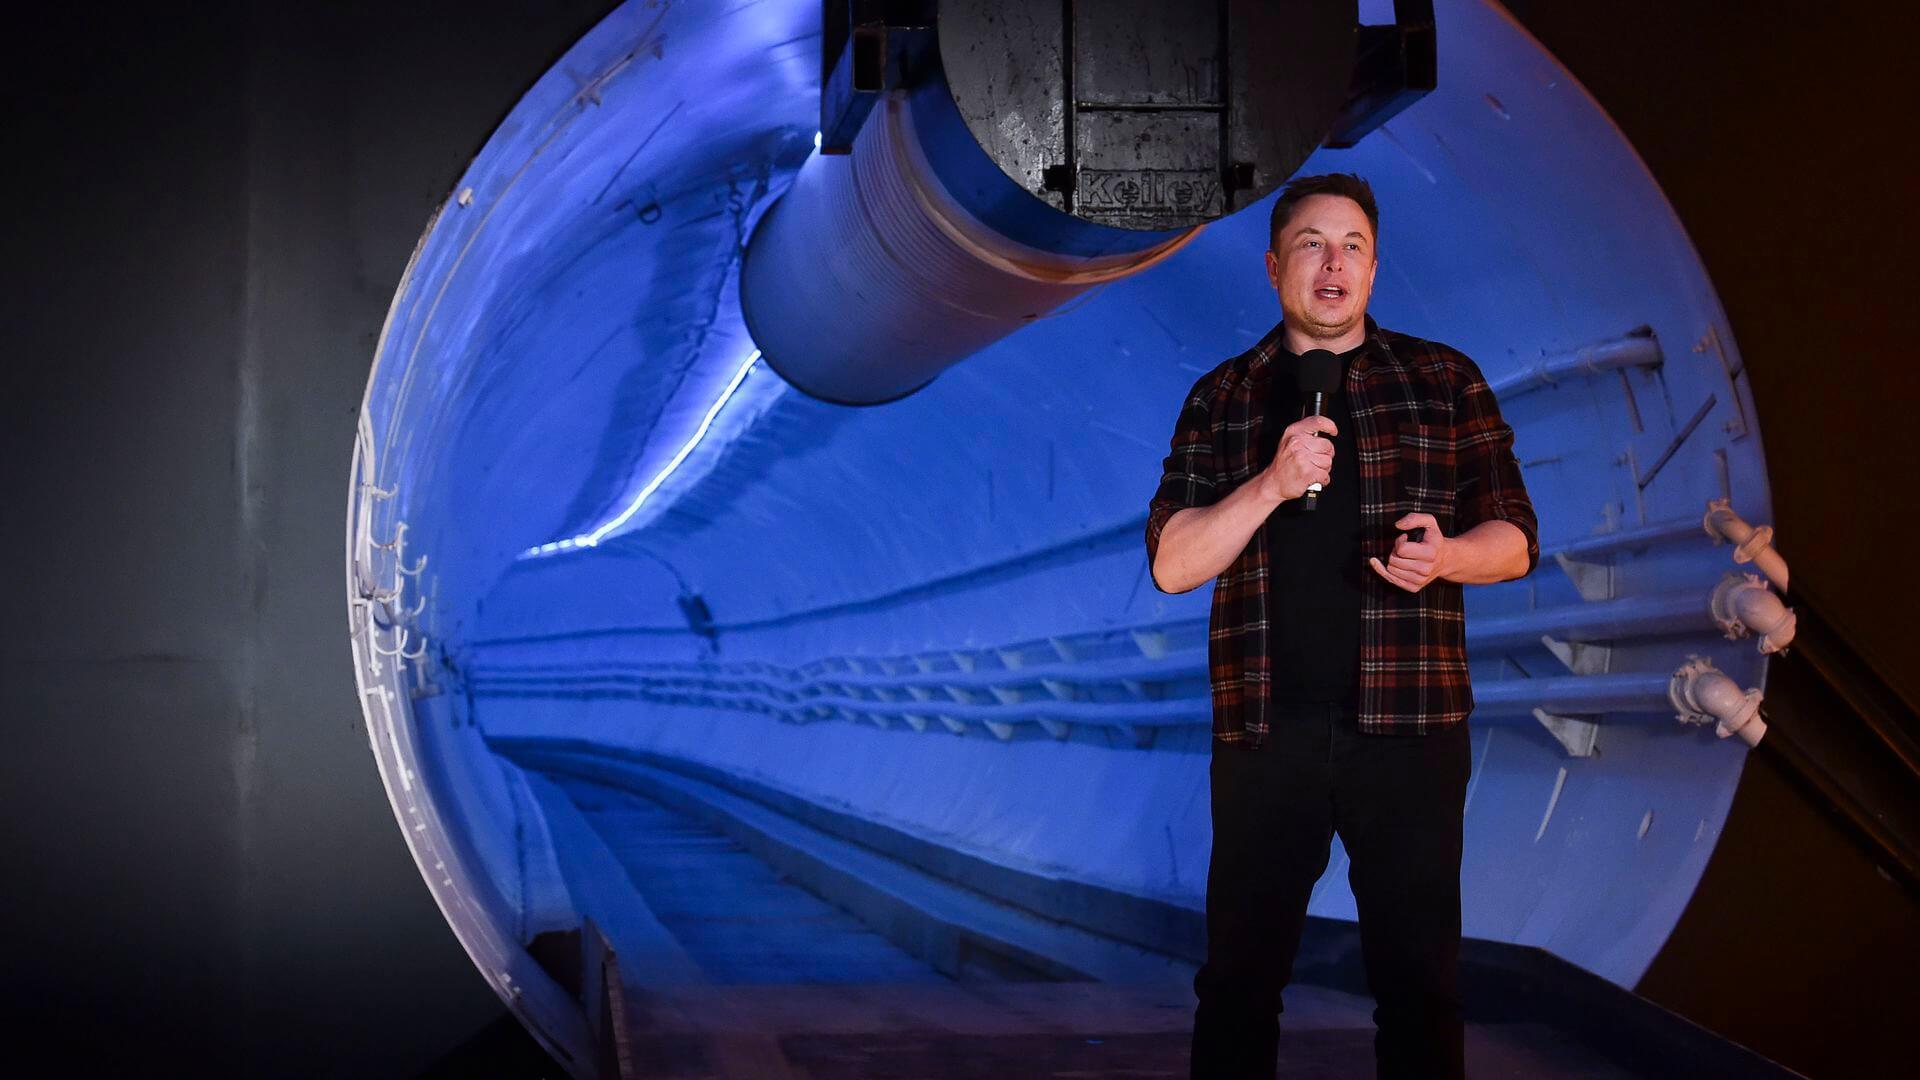 Elon Musk-ek Aspertzeko Konpainia "espero dugu" Las Vegas-eko tunela operatiboa izan dadin 2020an
